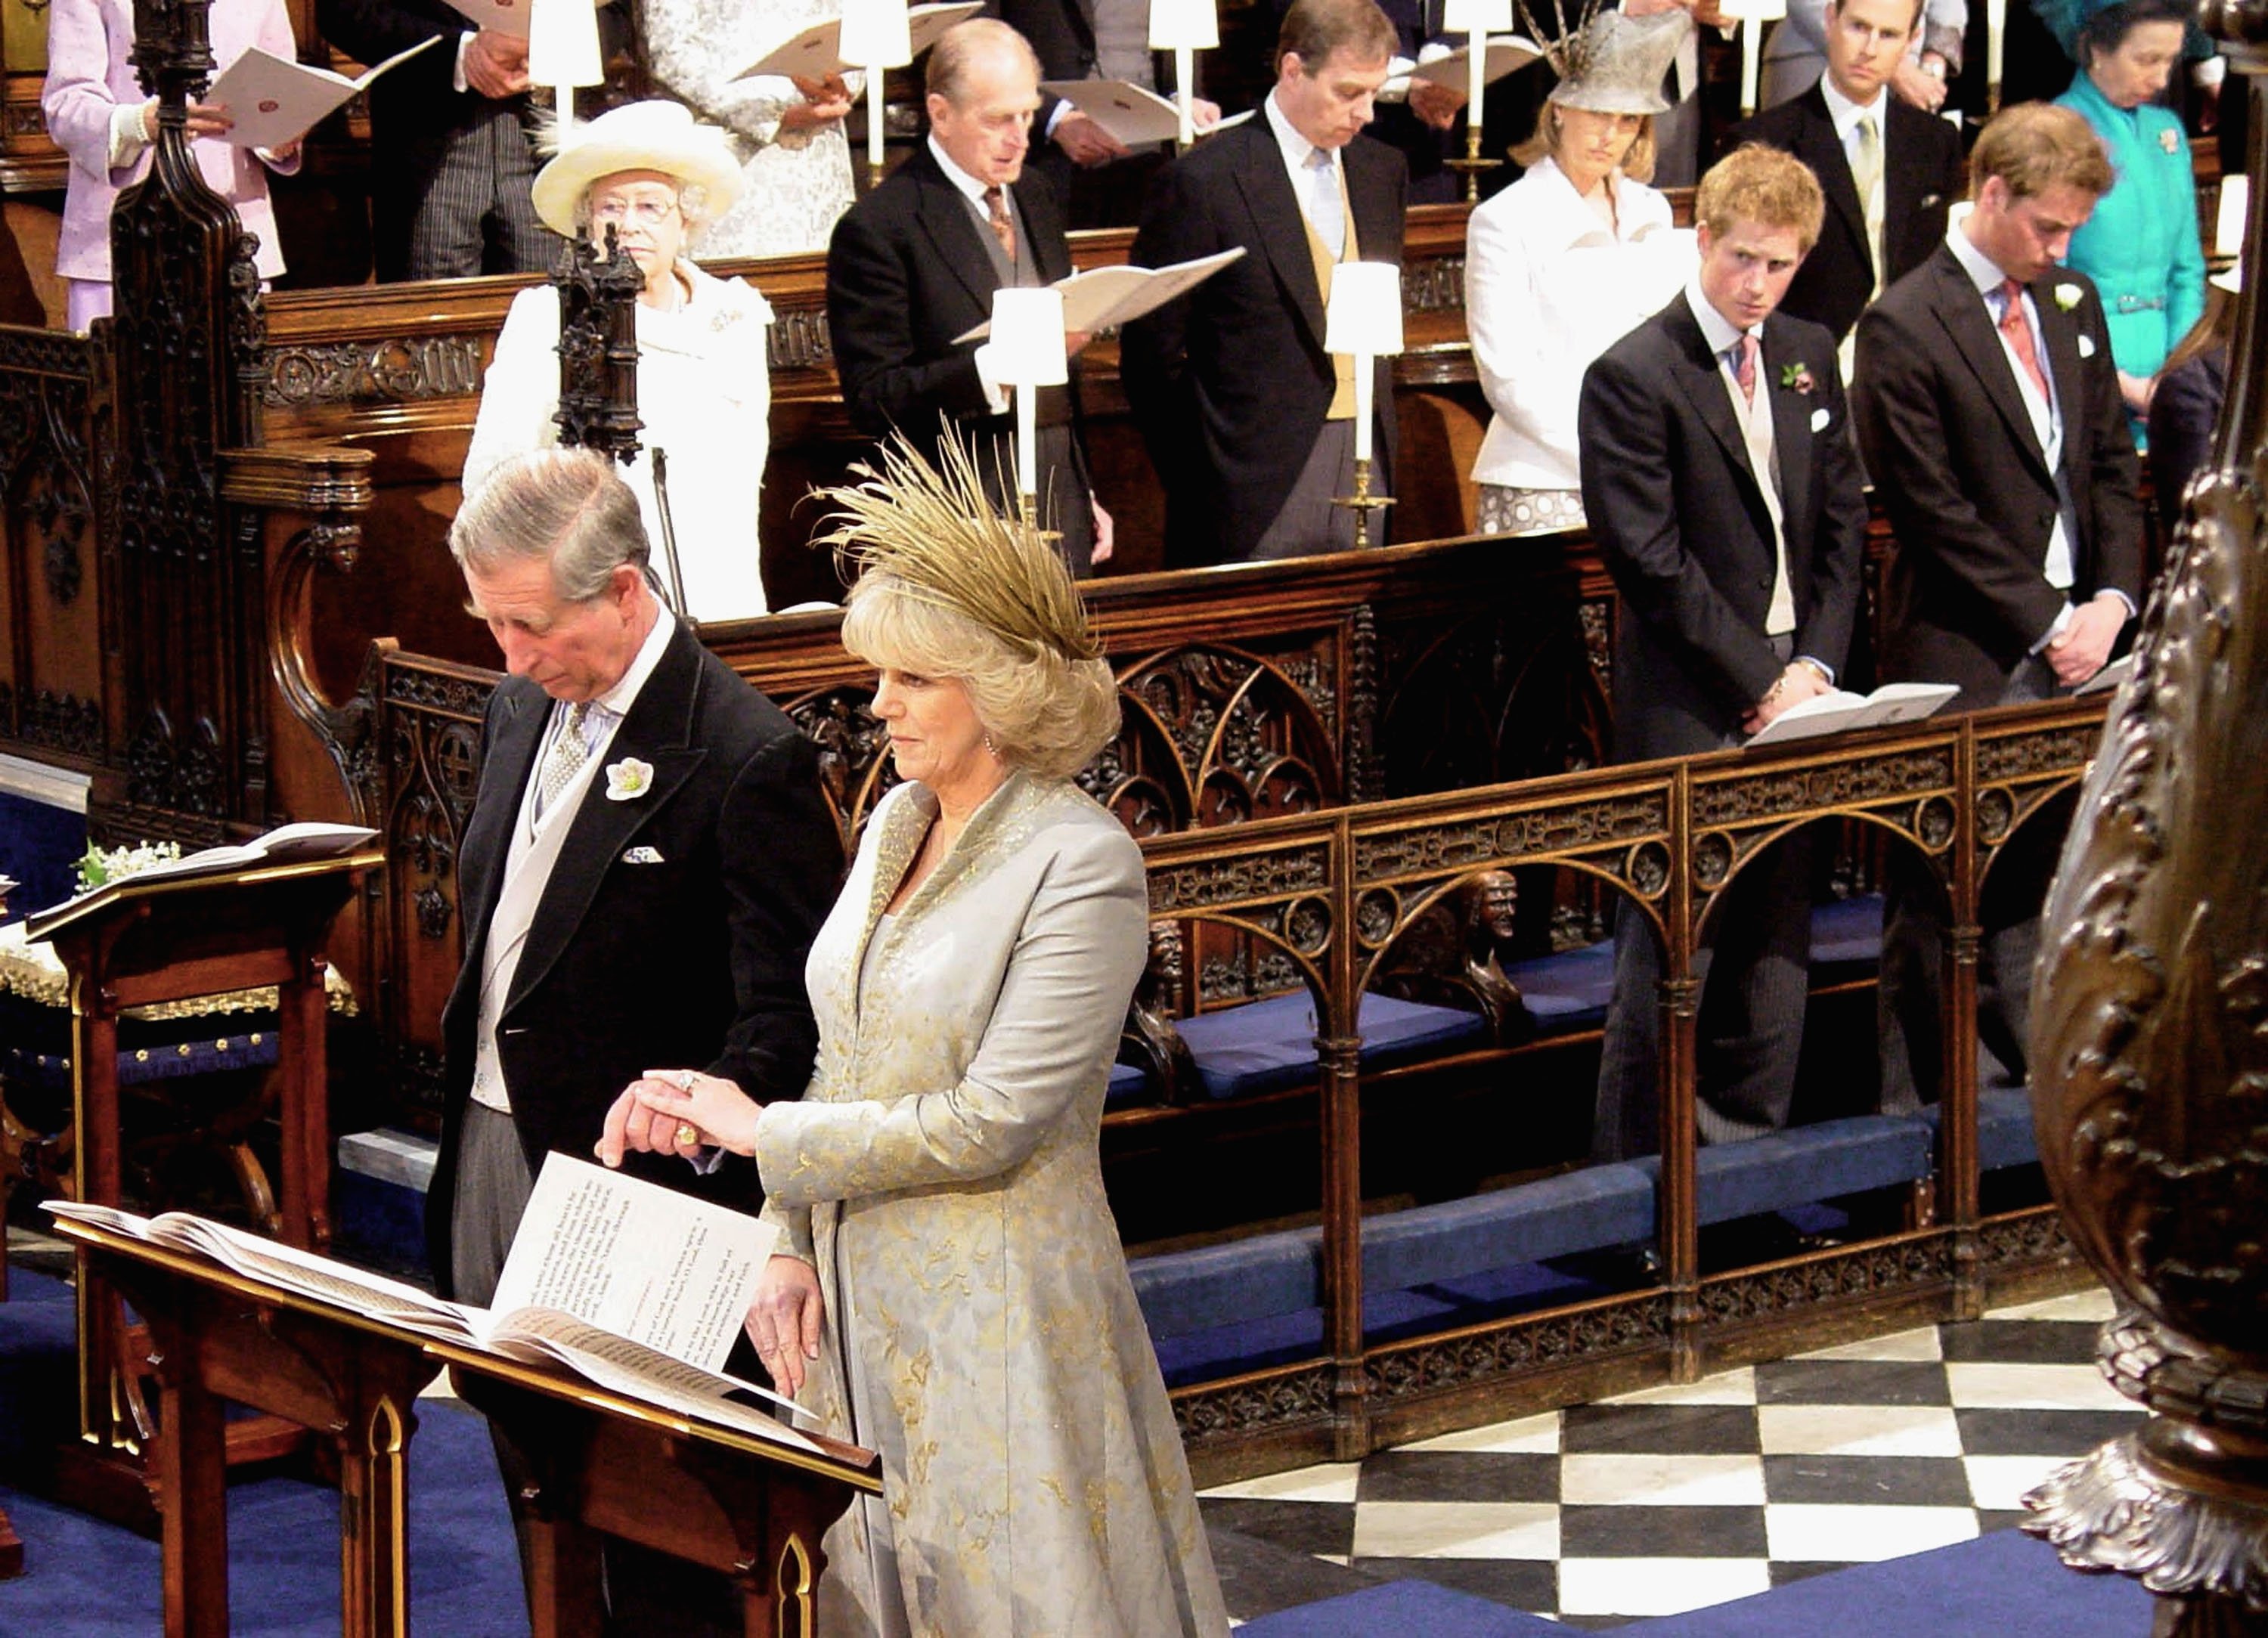 Le prince Charles et Camilla Parker Bowles assistent au service de prière et de consécration de leur mariage au château de Windsor le 9 avril 2005 à Berkshire, en Angleterre | Source : Getty Images